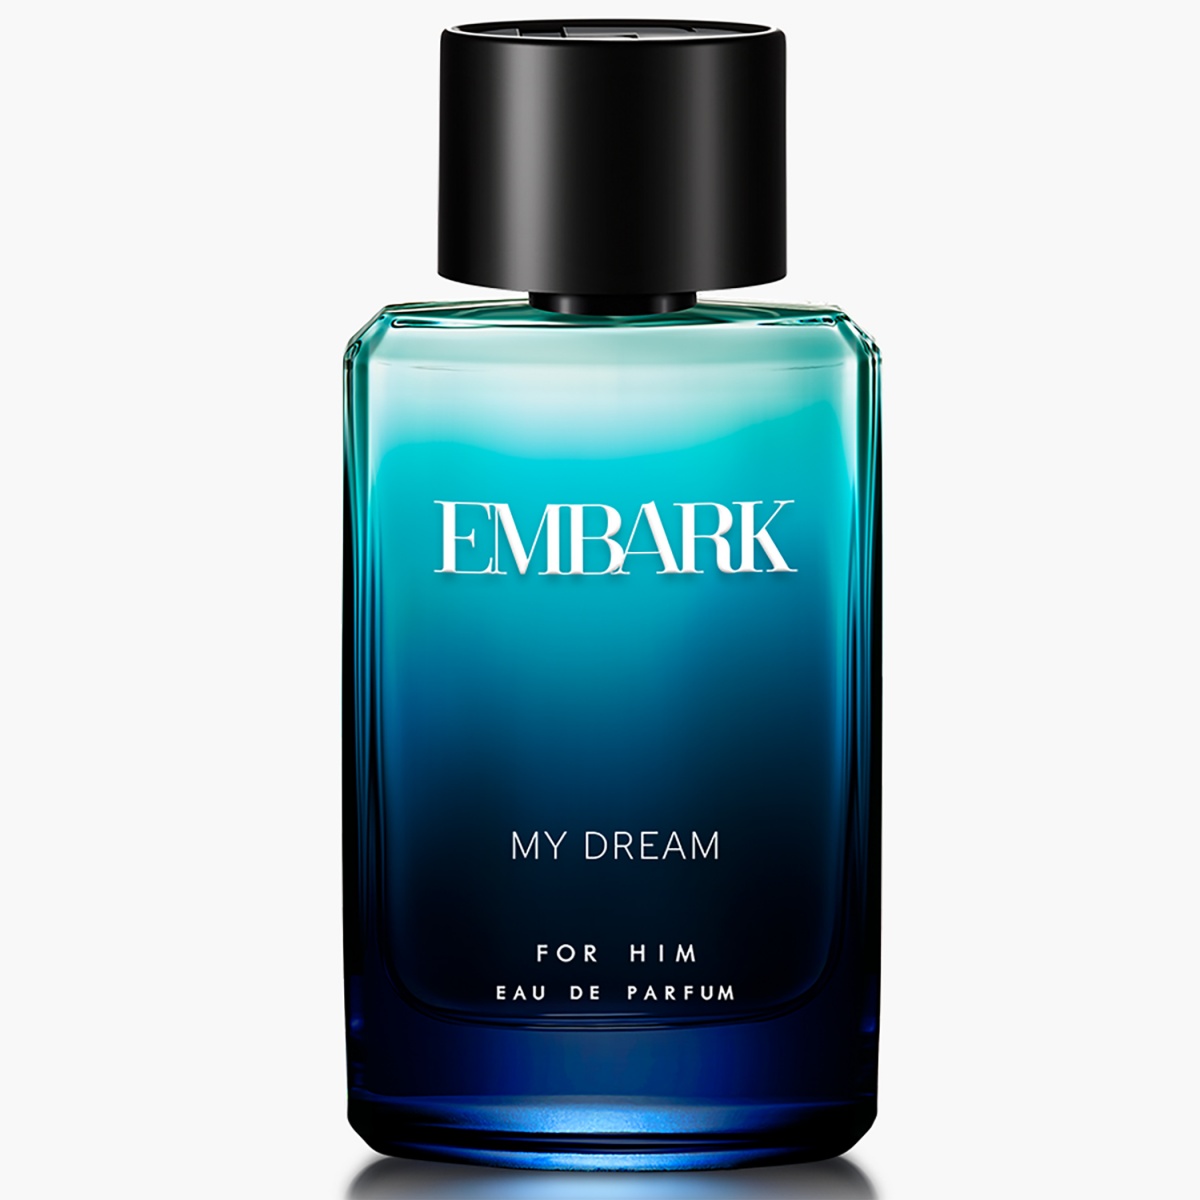 EMBARK My Dream For Him Eau De Parfum- 100 ml.